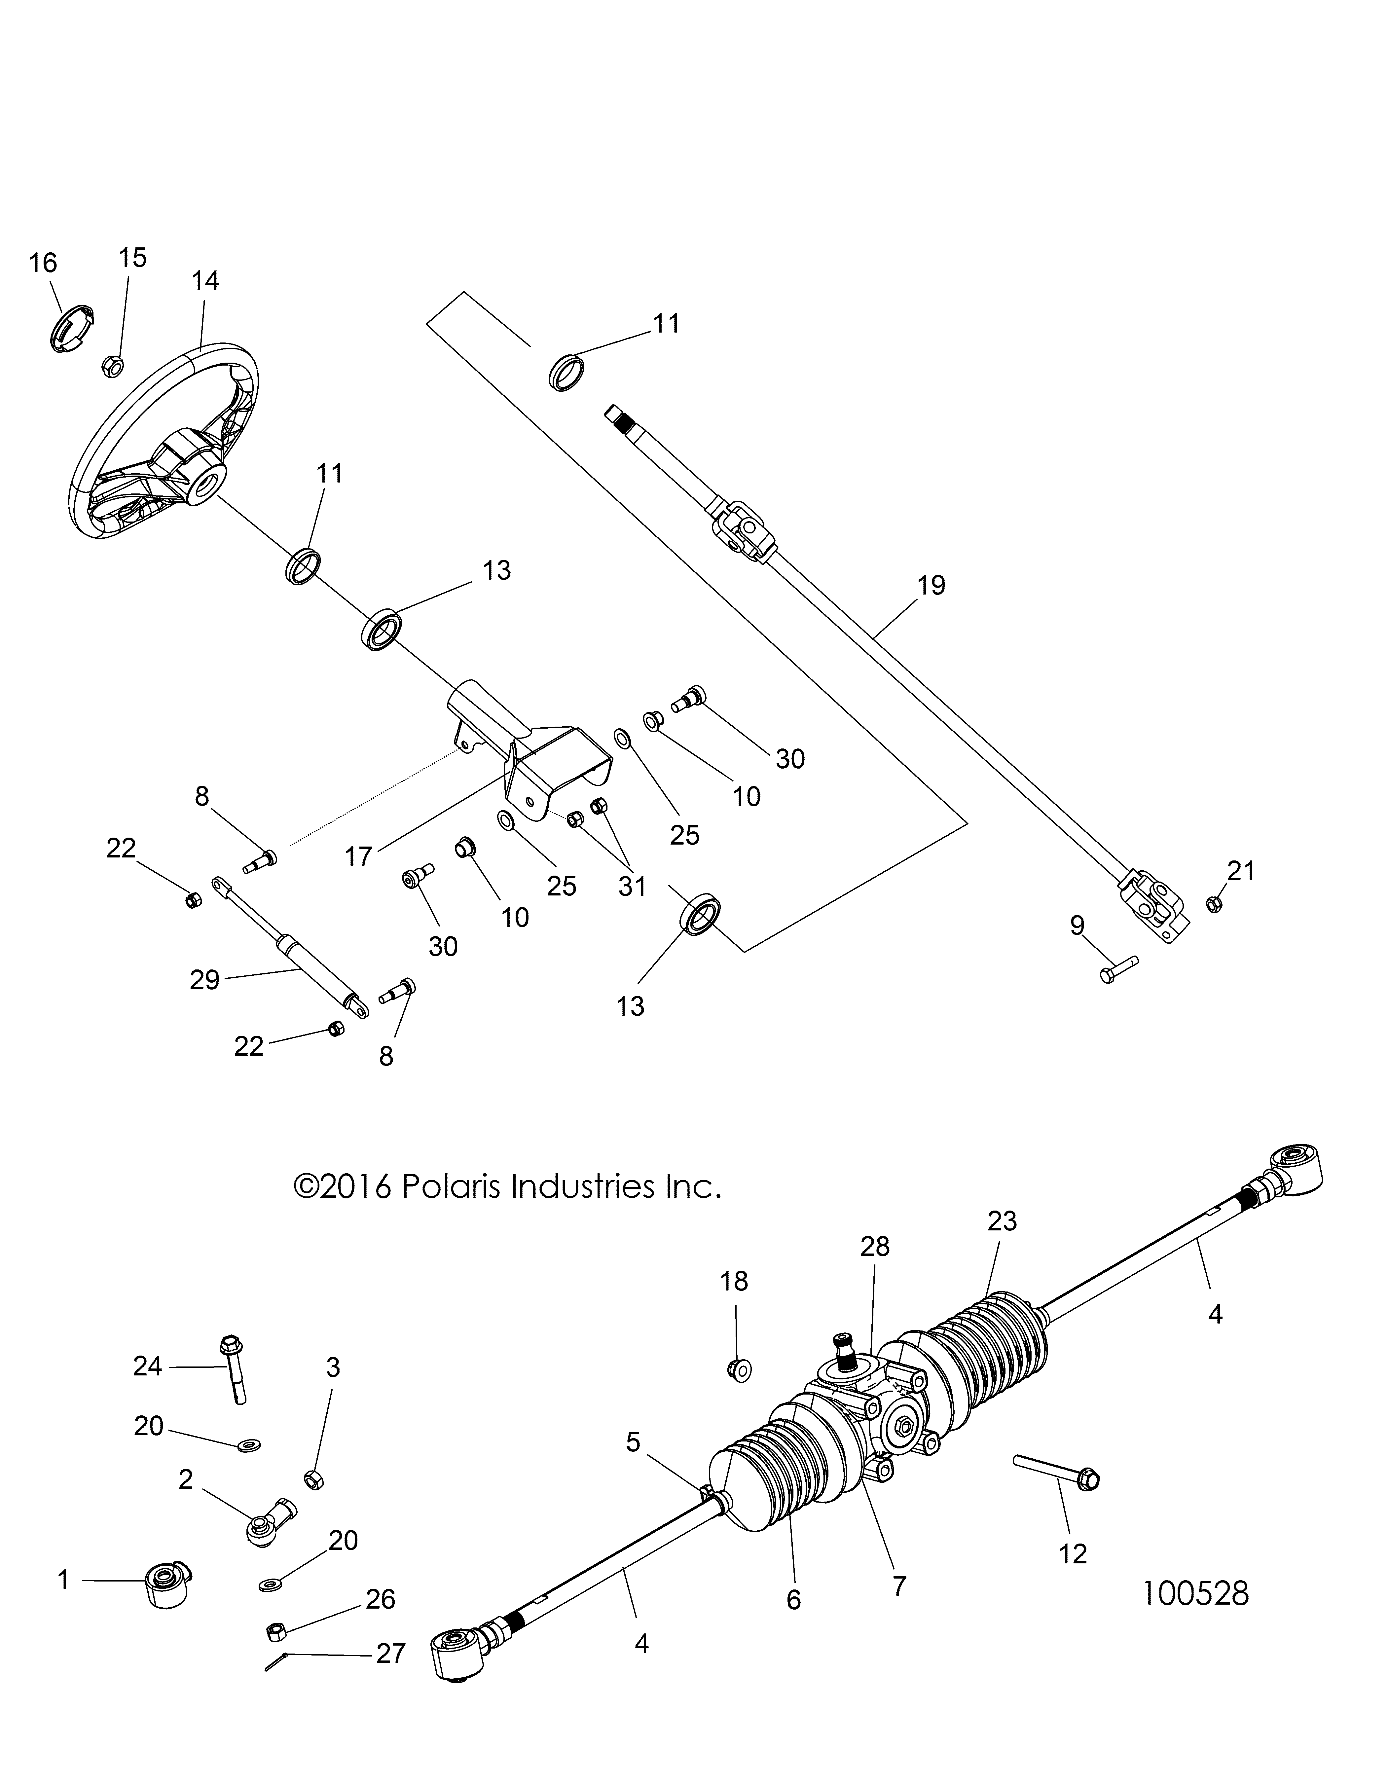 Foto diagrama Polaris que contem a peça 7556675